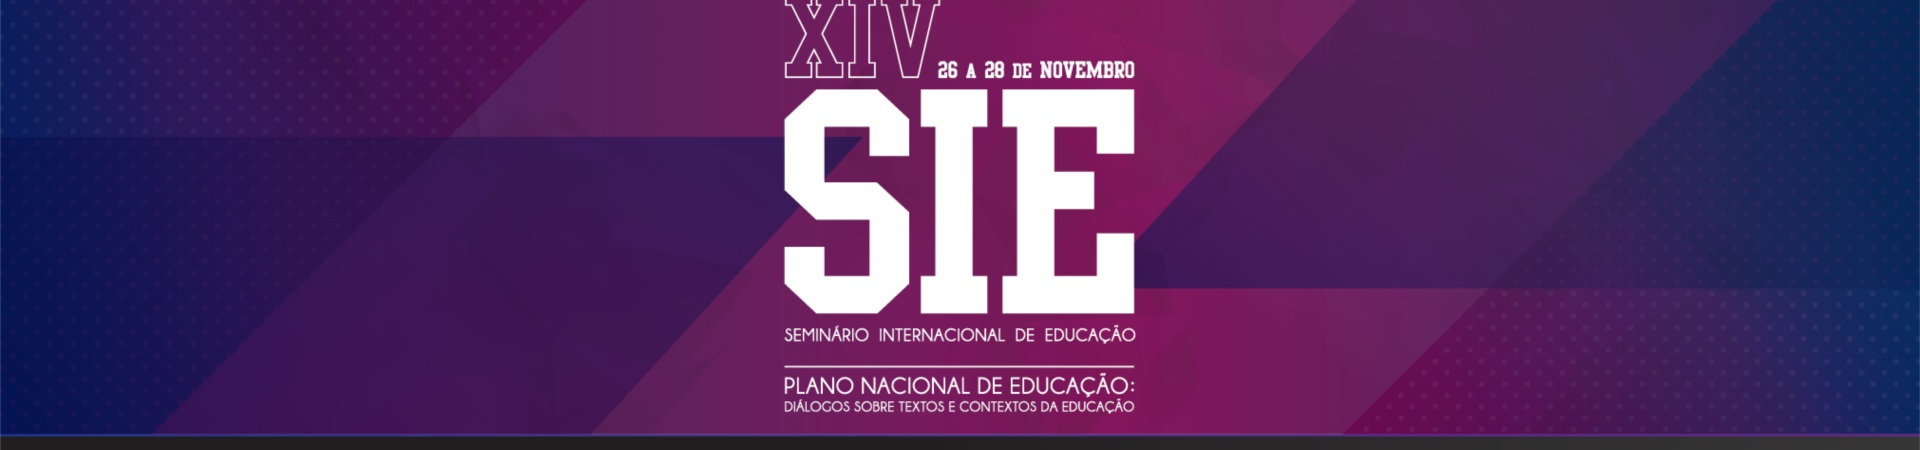 banner de divulgação do evento XIV Seminário Internacional de Educação. Plano Nacional de Educação: Diálogos Sobre Textos e Contextos da Educação